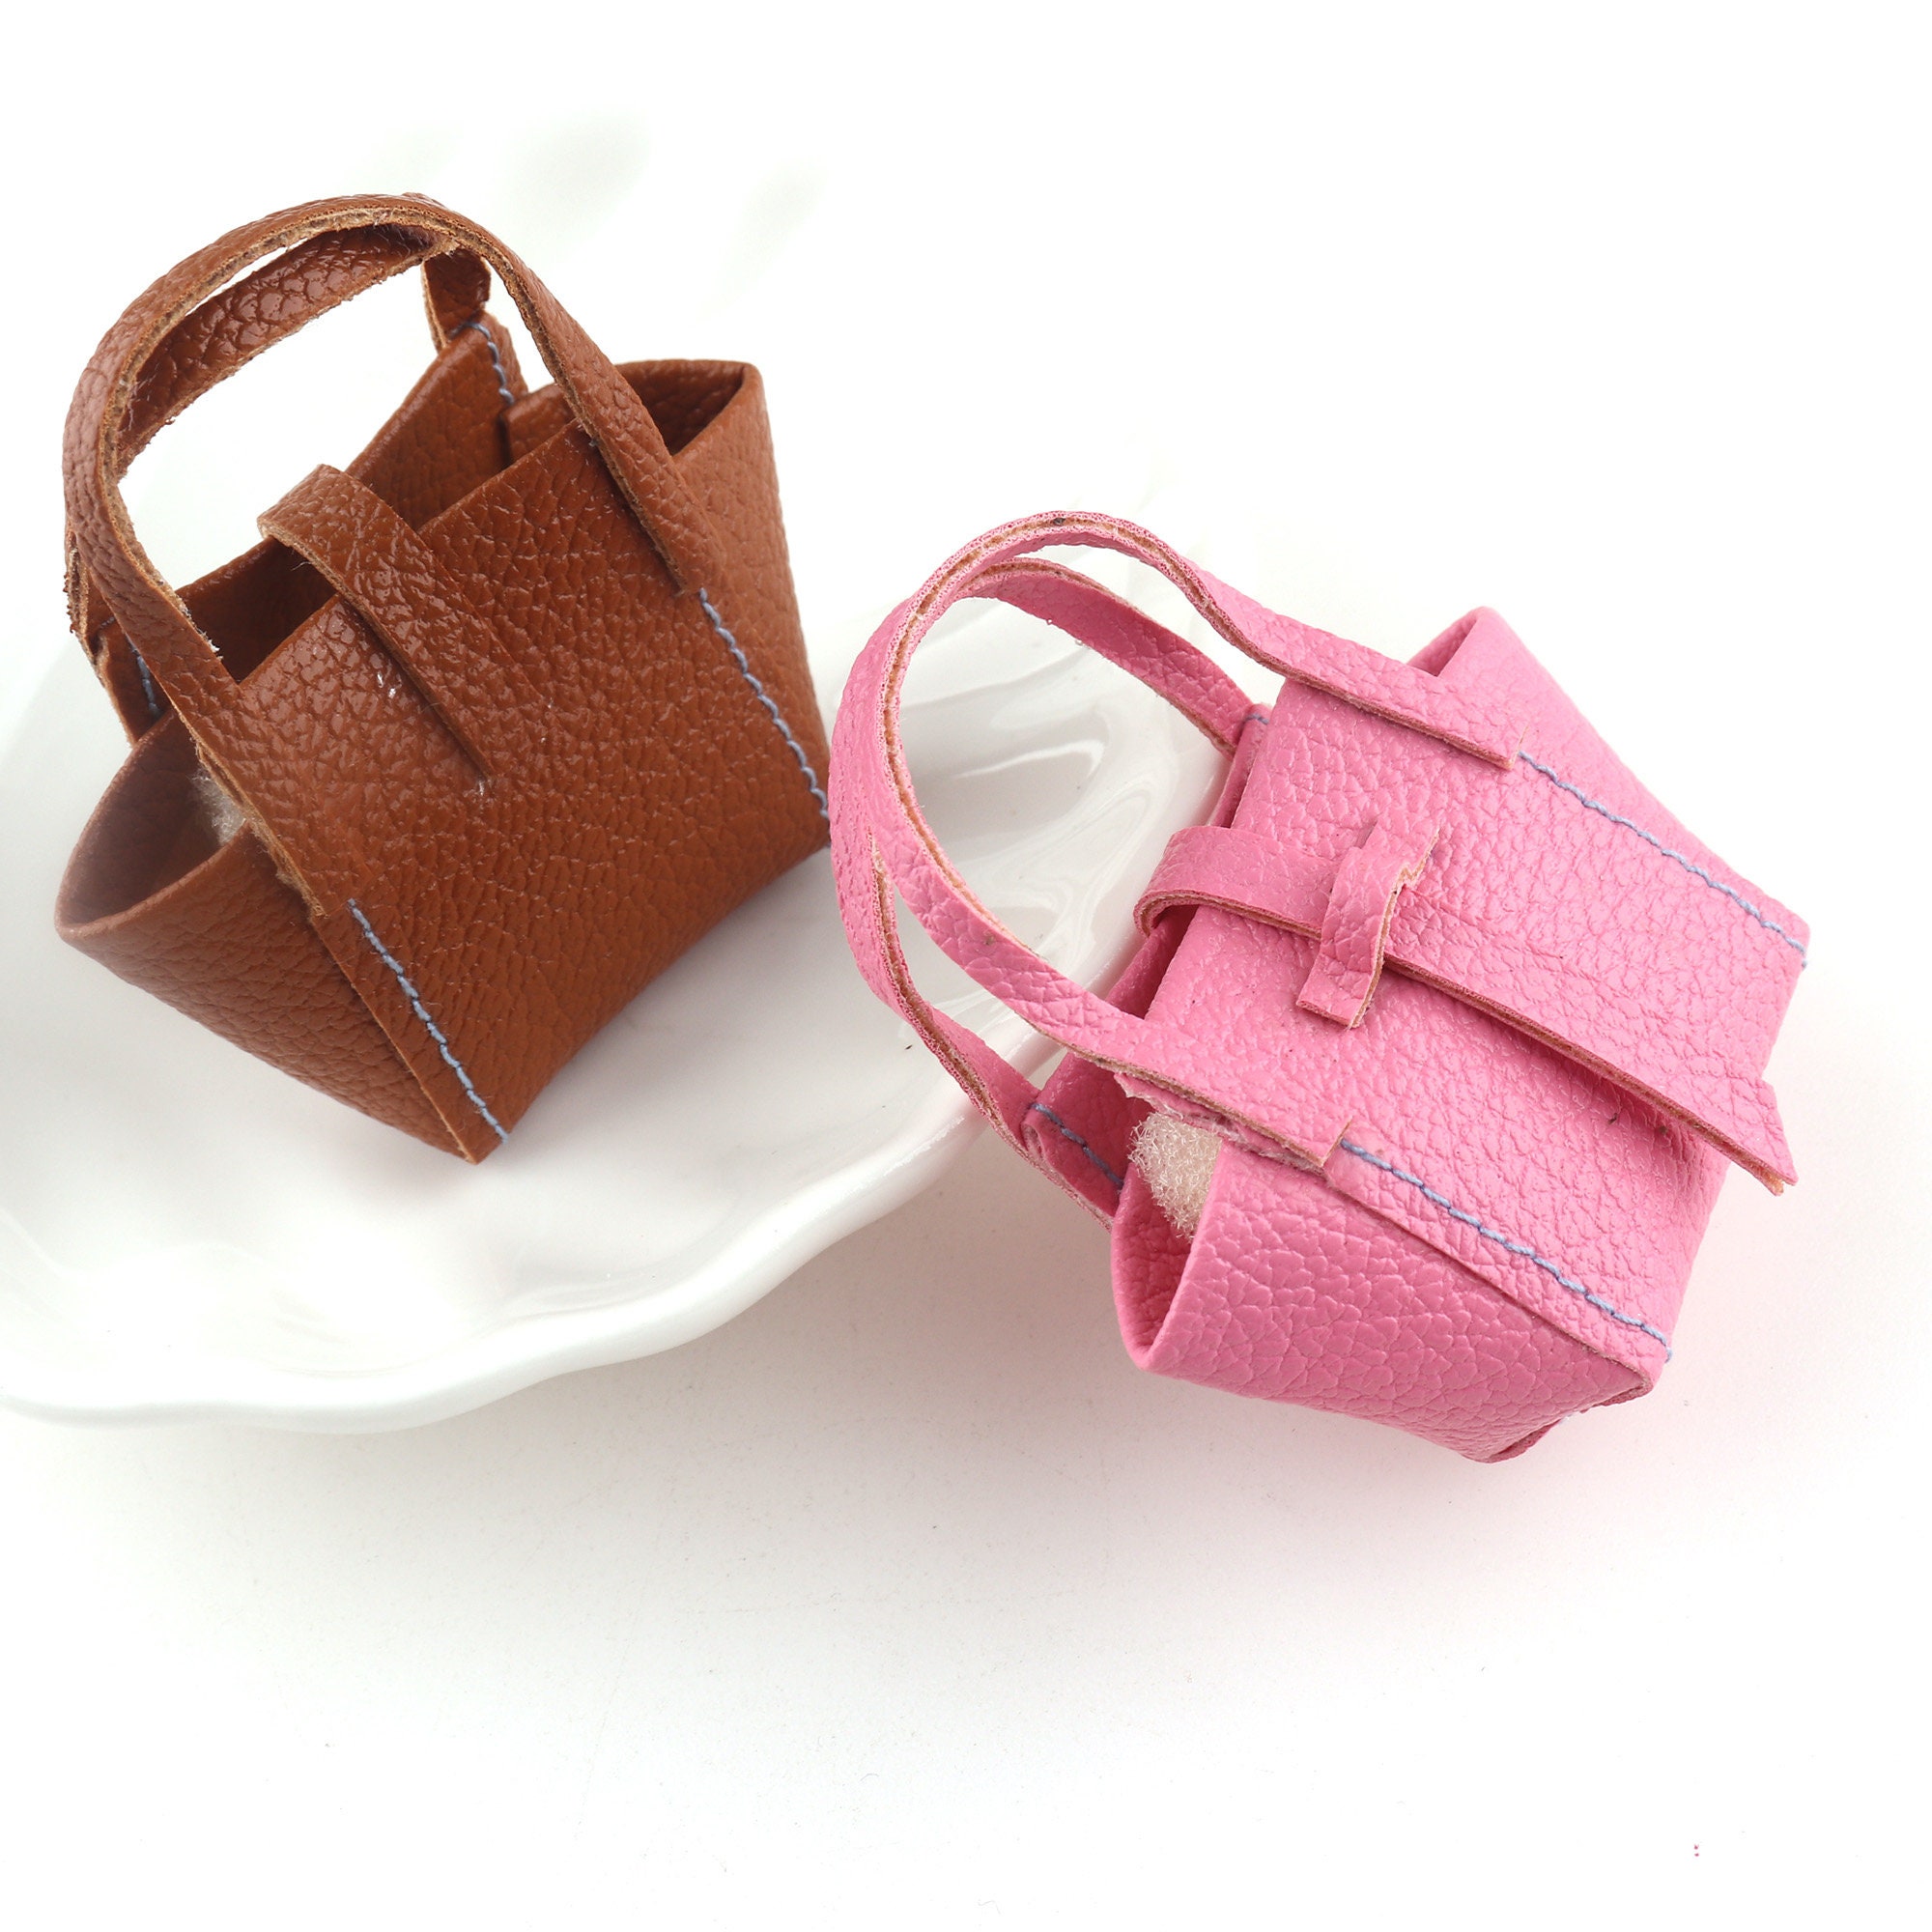 Mini - Miniature Designer Bag Ornaments